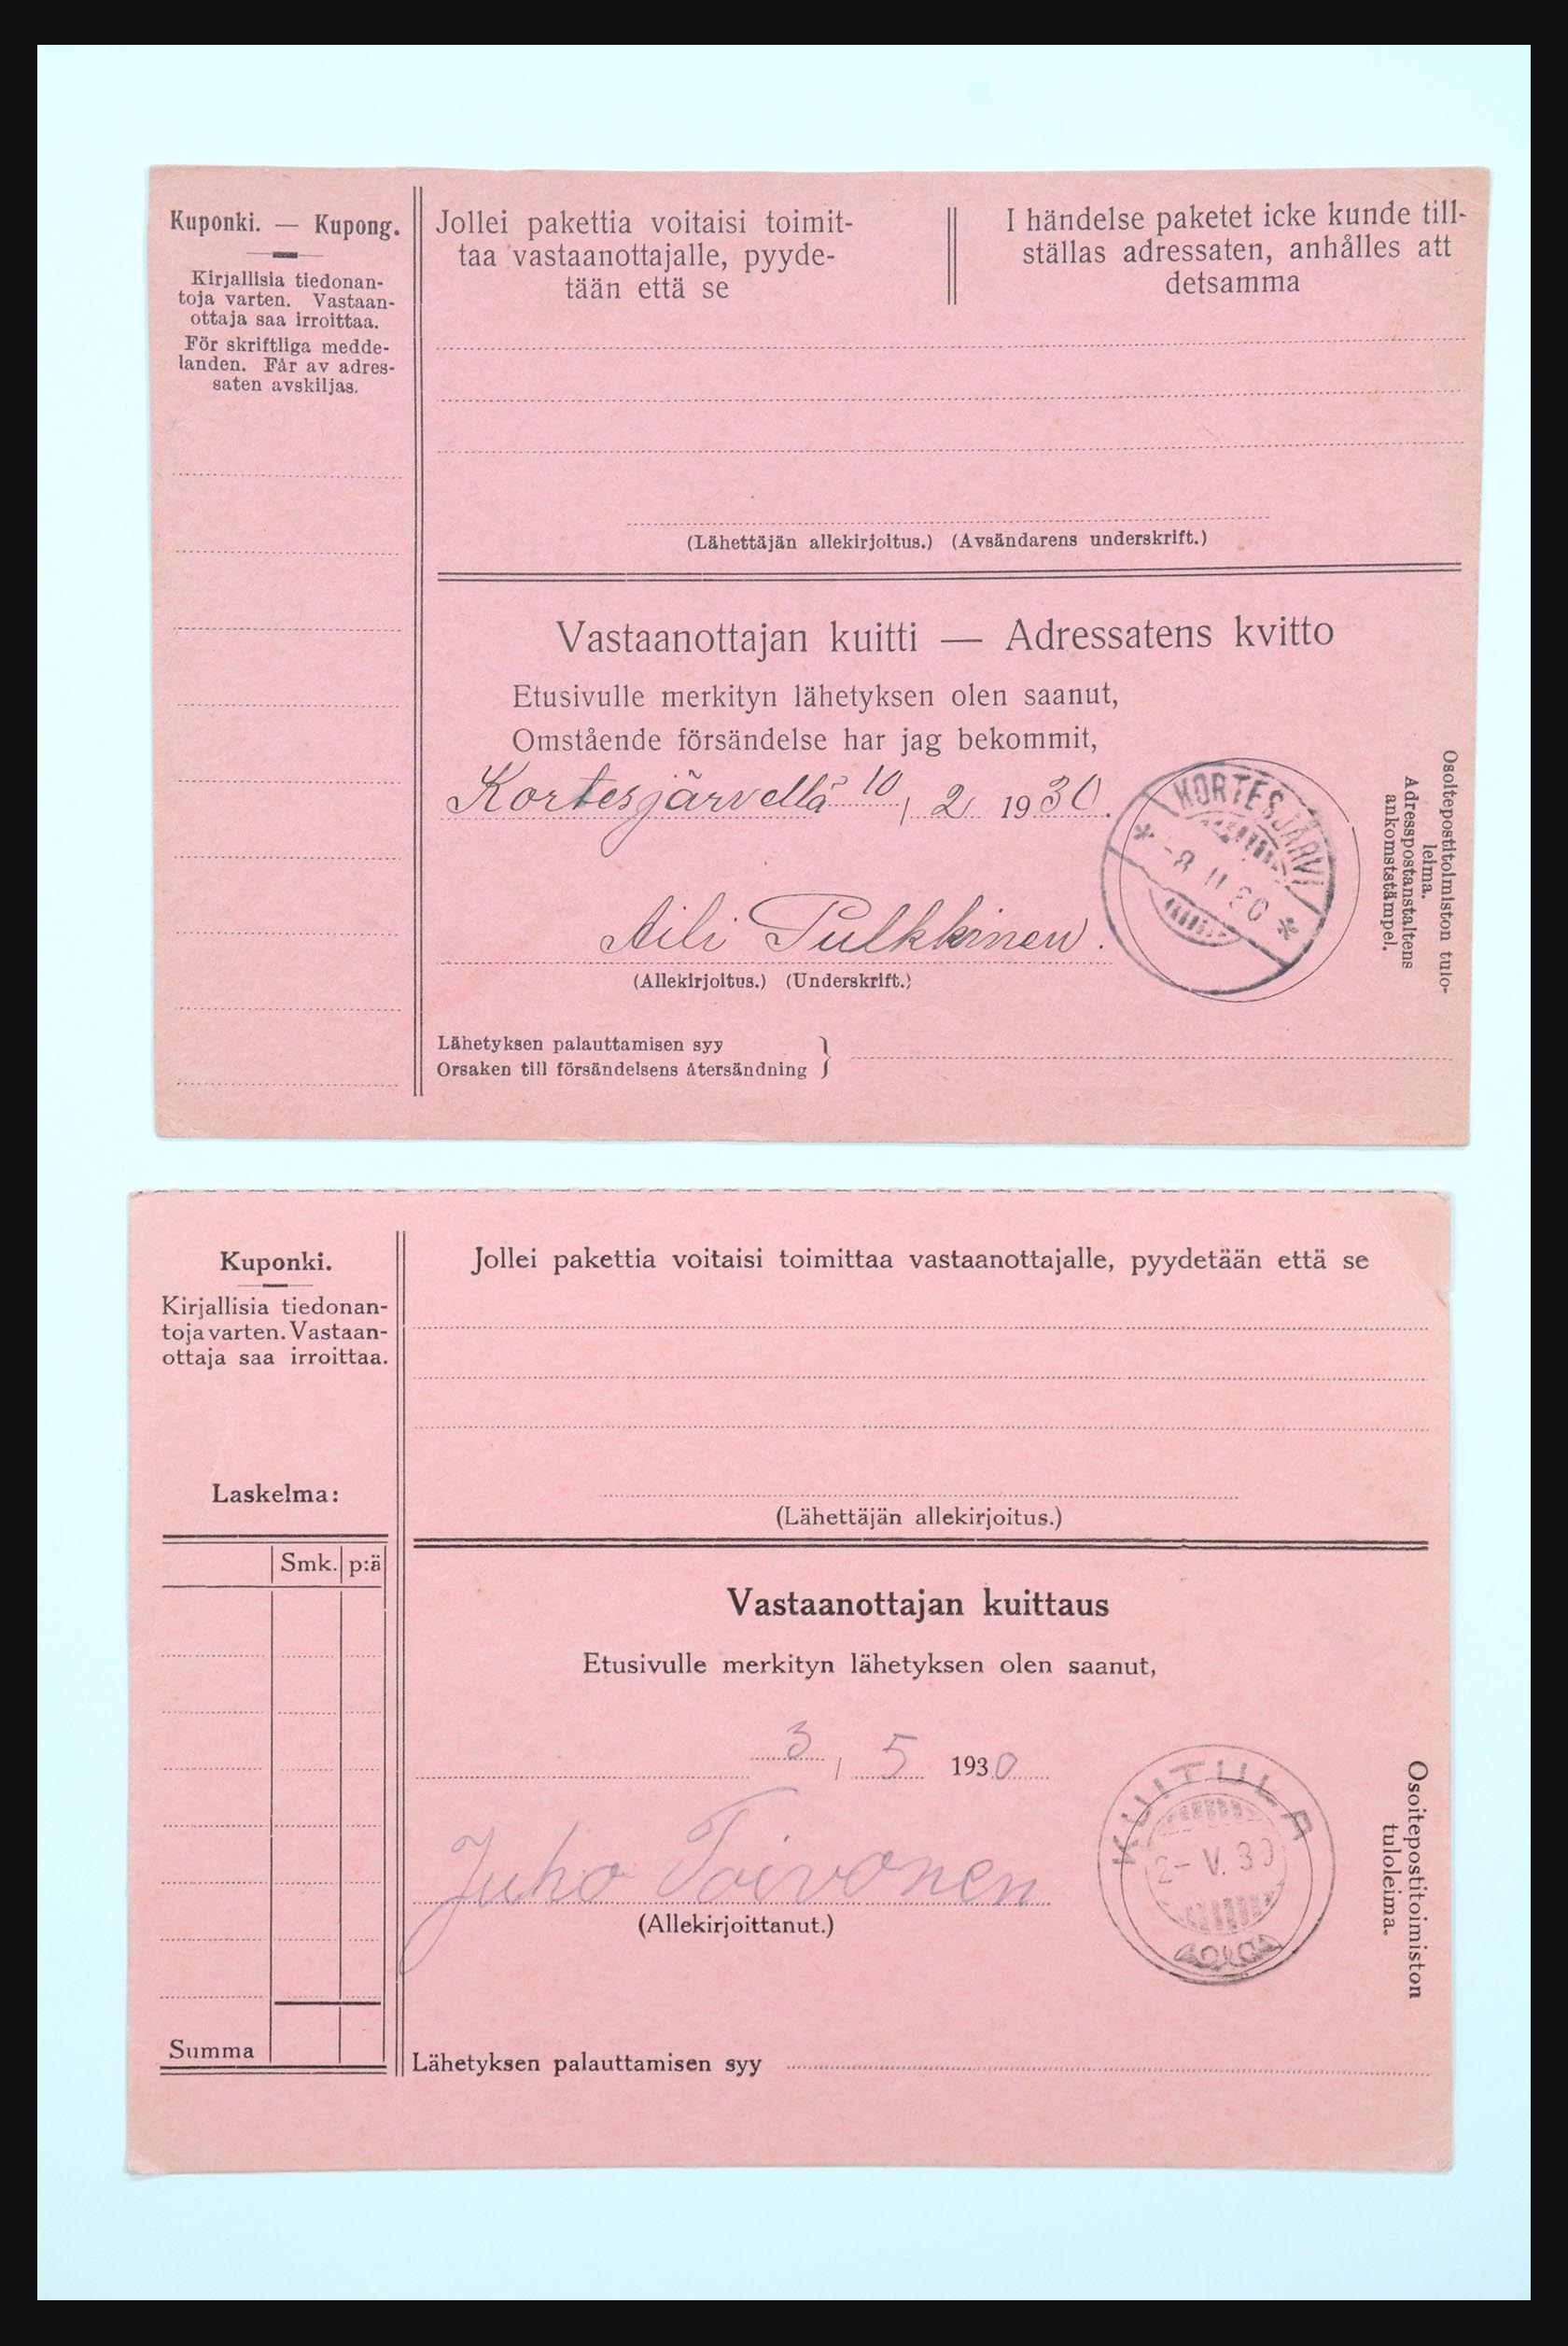 31658 061 - 31658 Finland brieven 1833-1960.